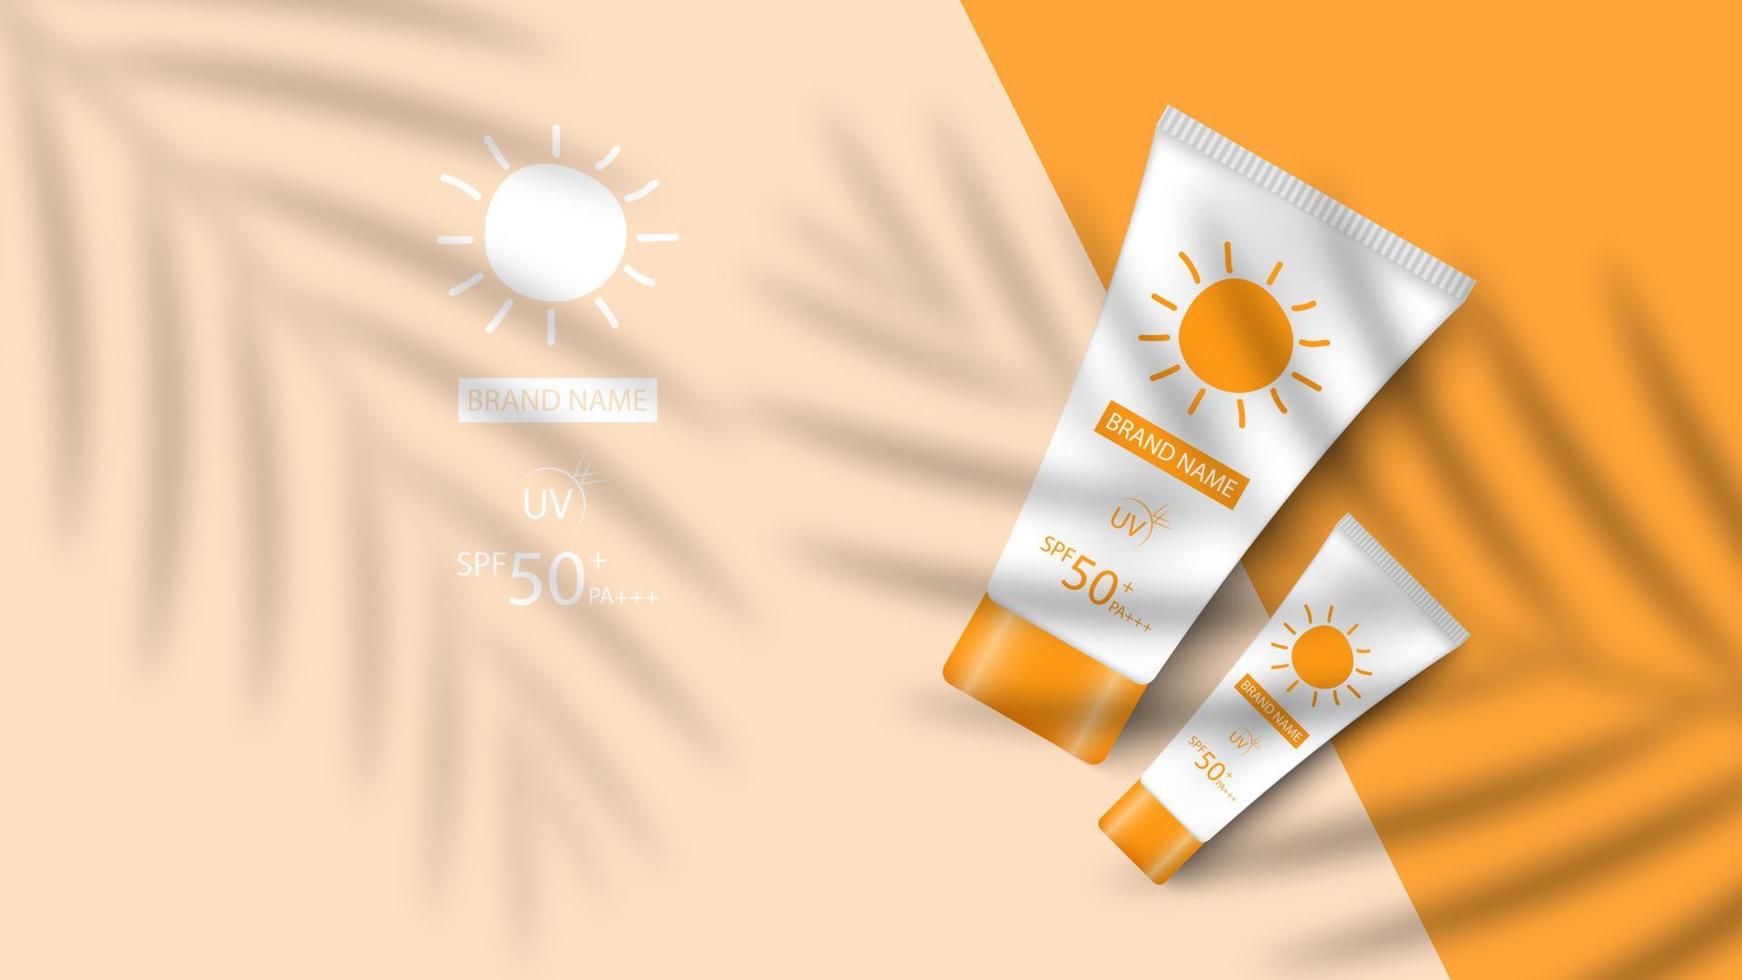 sunblock Product ontwerp mockup achtergrond, kunstmatig advertentie ontwerp, vector illustratie